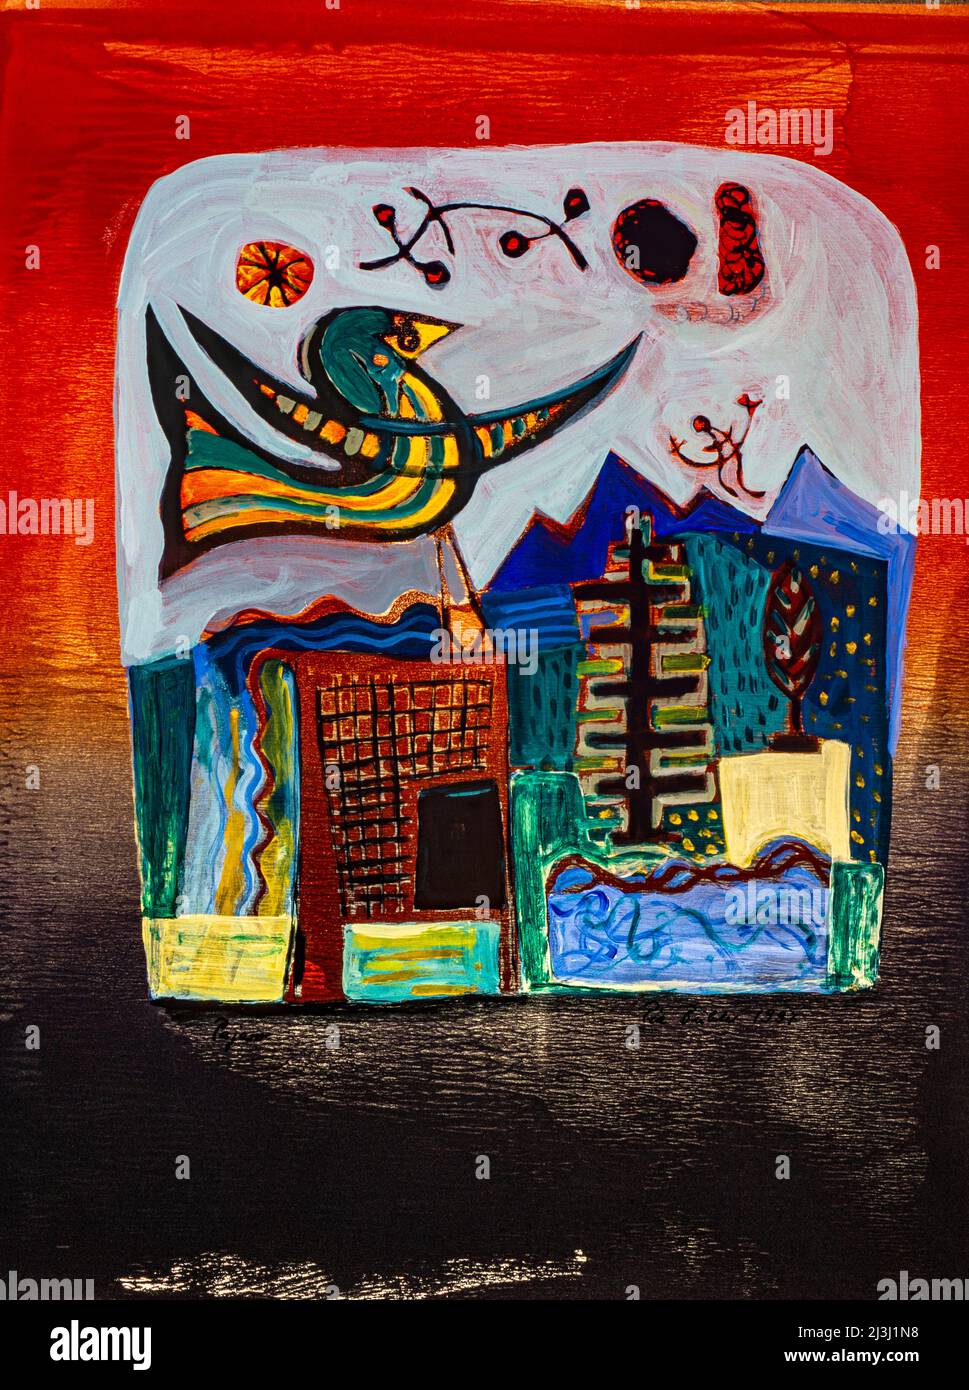 Gemälde von Pia Bühler, Lithographie und Acrylfantasiefigur, ein Vogel, umgeben vom roten Licht der untergehenden Sonne, darunter Gebäude und eine dunkle Landschaft mit blauen Bergen im Hintergrund Stockfoto